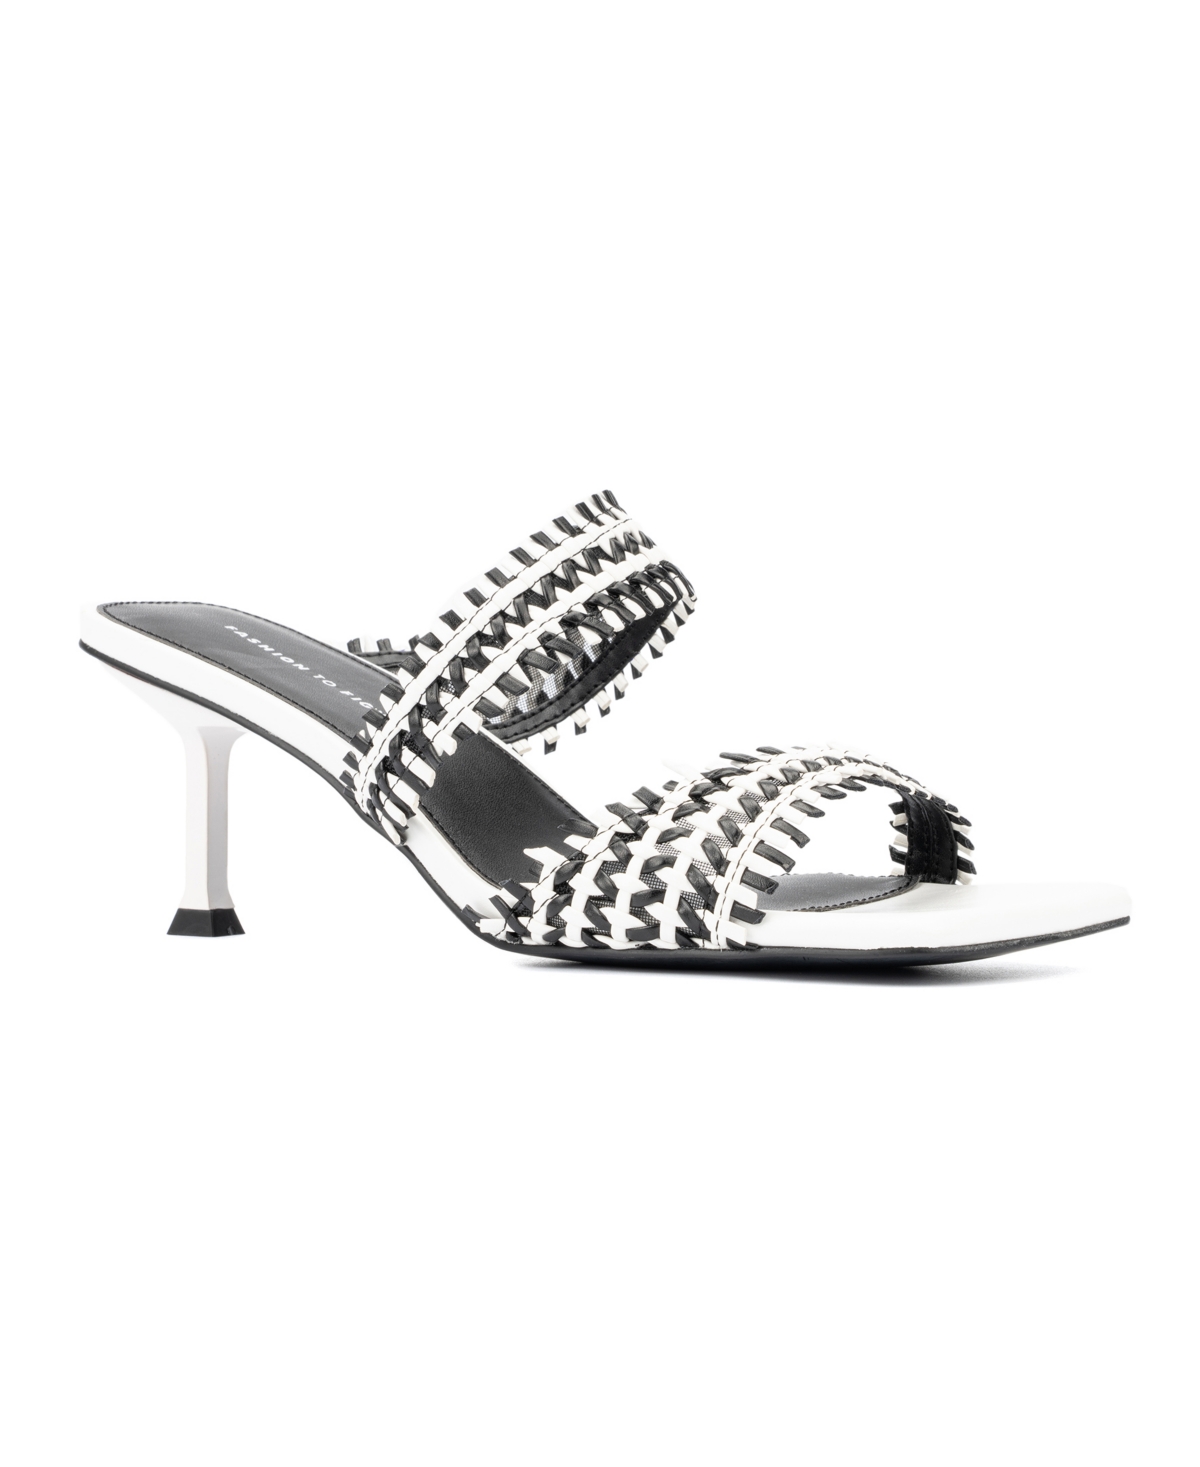 Women's Patti Wide Width Sandals Heels - Black/white